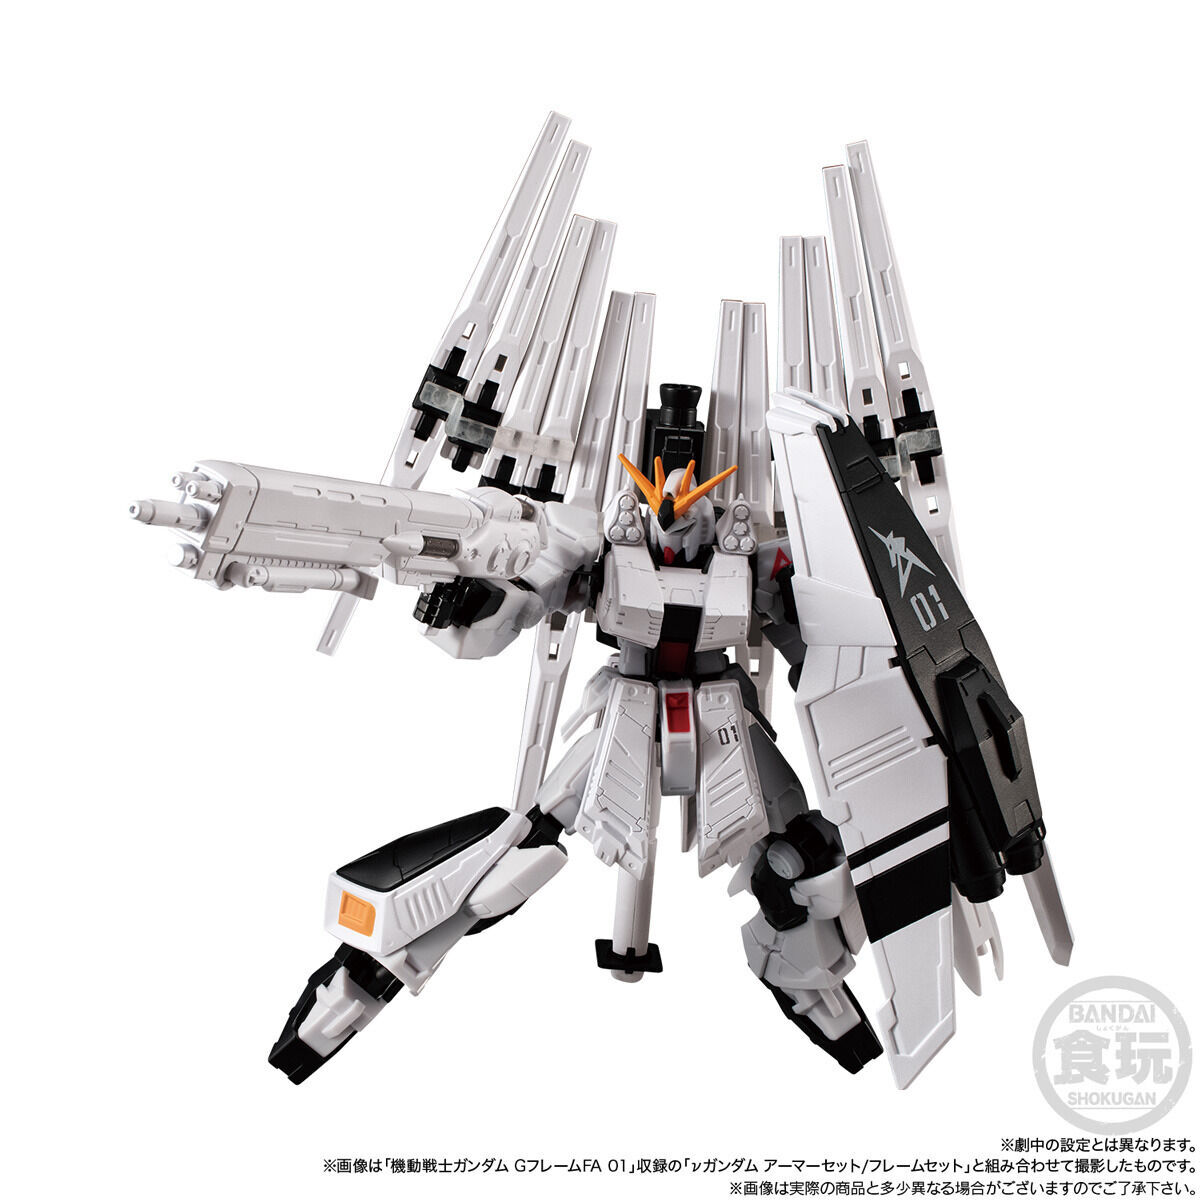 Mobile Suit Gundam G Frame Full Armor Option Parts set for RX-93 ν Gundam + MSN-04 Sazabi